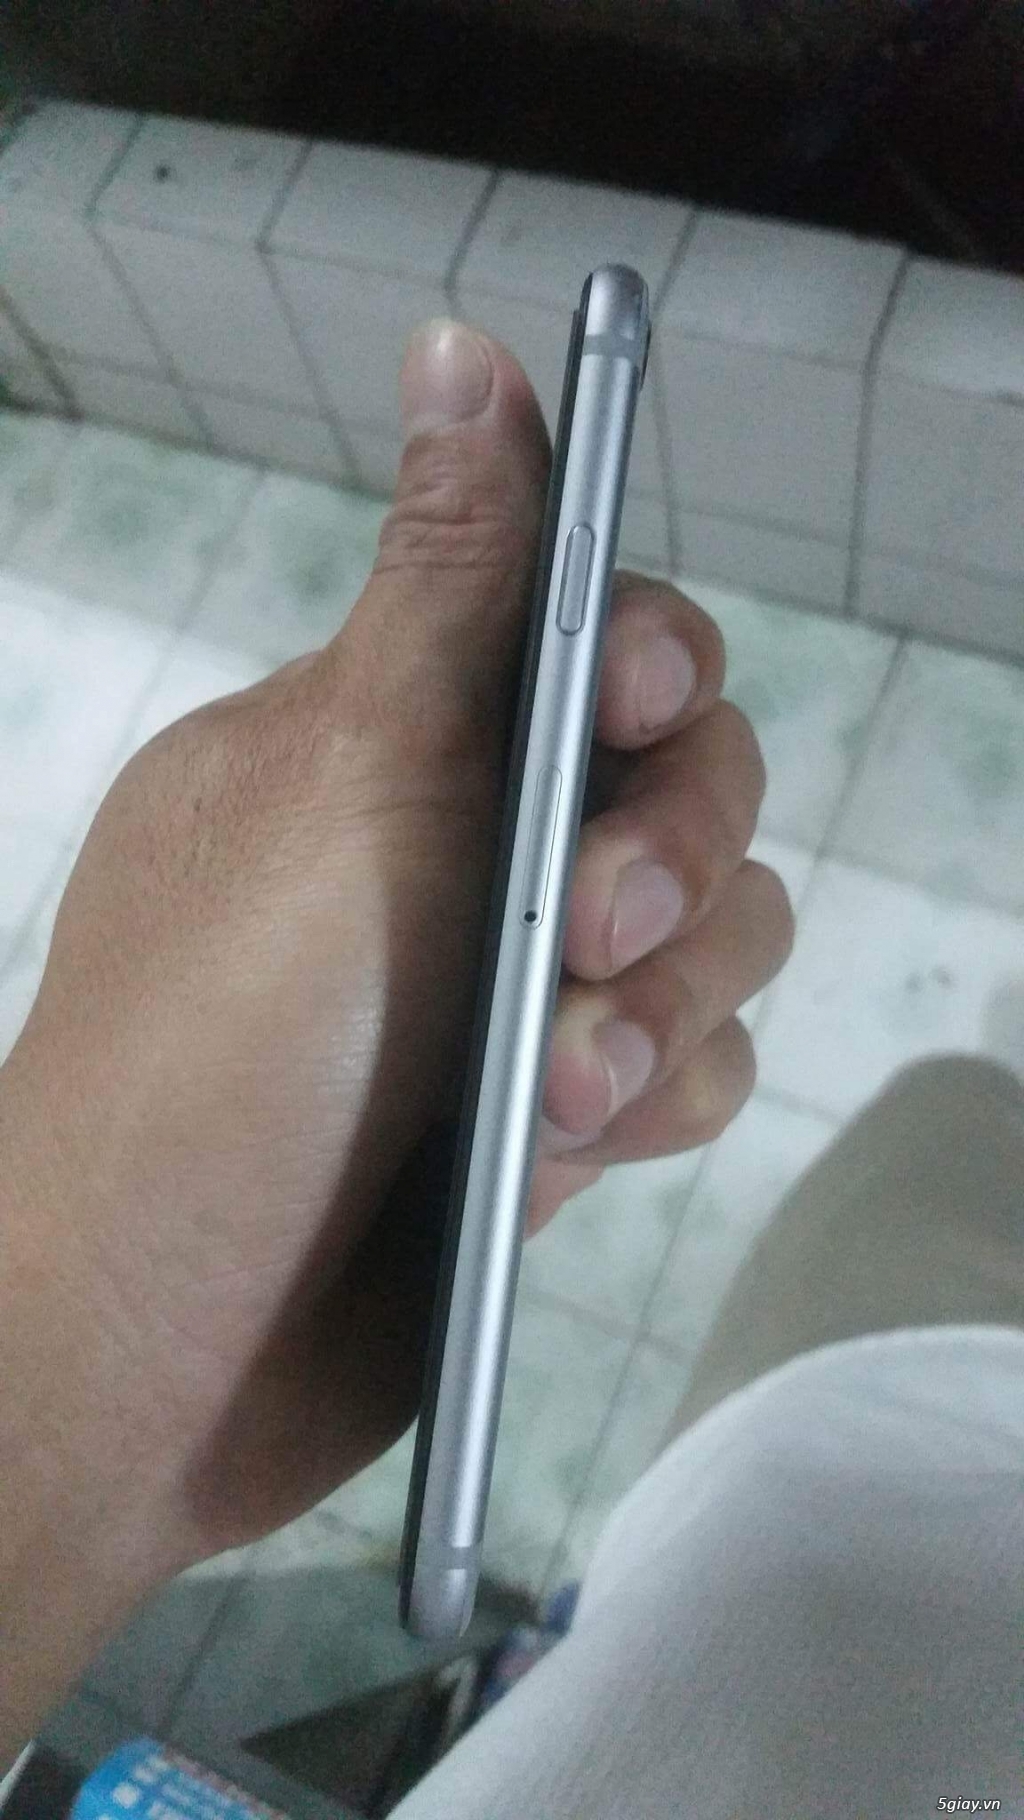 Iphone 6 gray 16G bản Hàn